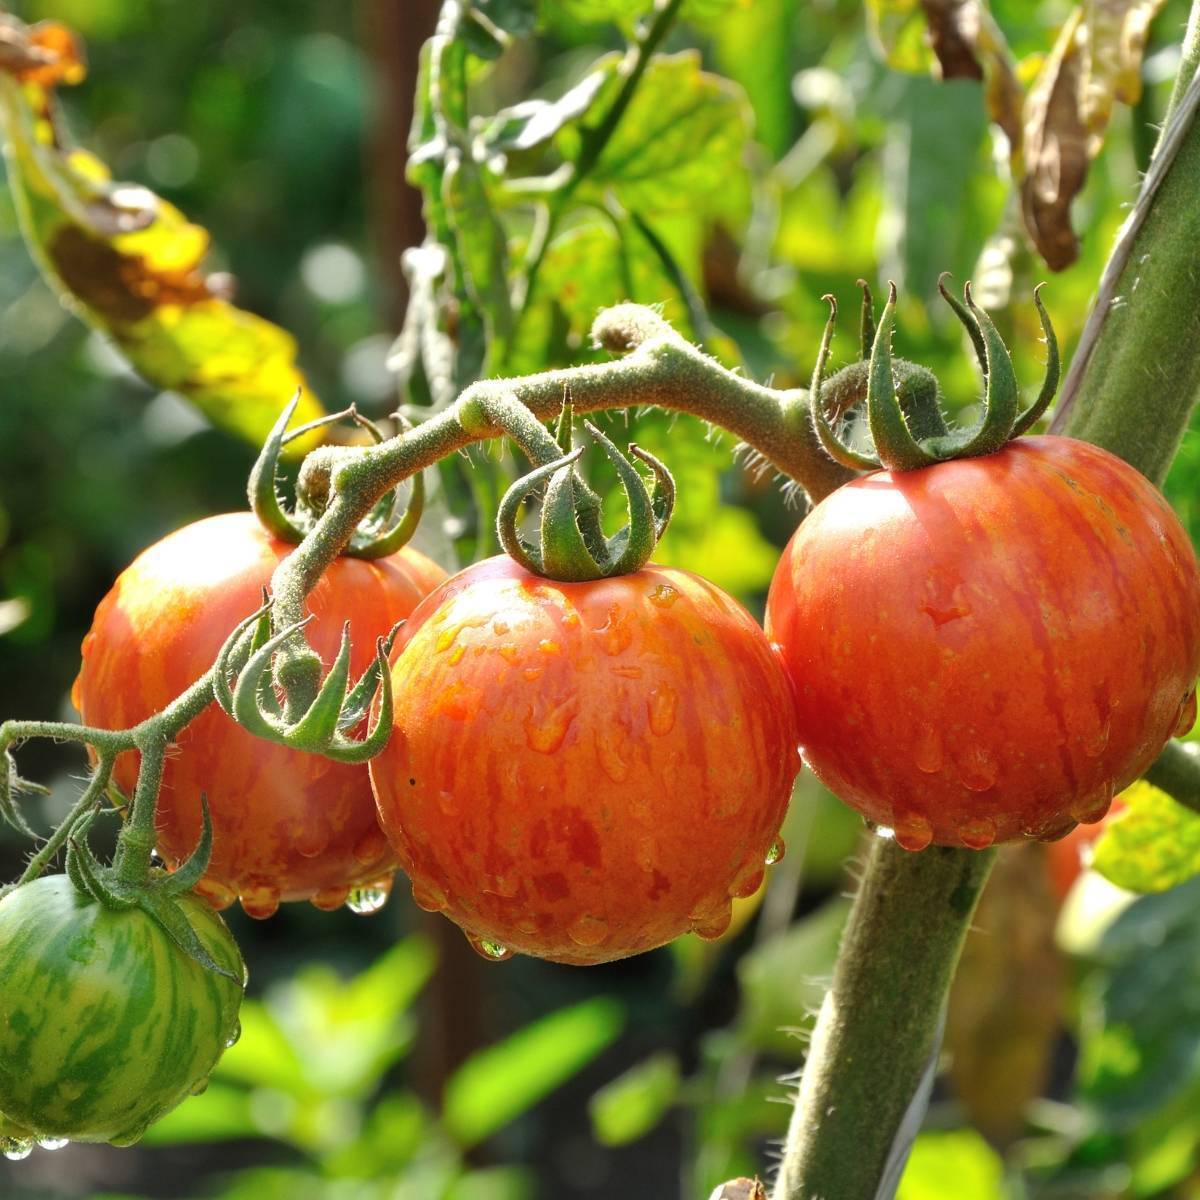 Cara Menanam Tomat Tigerella Lurik Mudah, Hanya 4 Langkah!